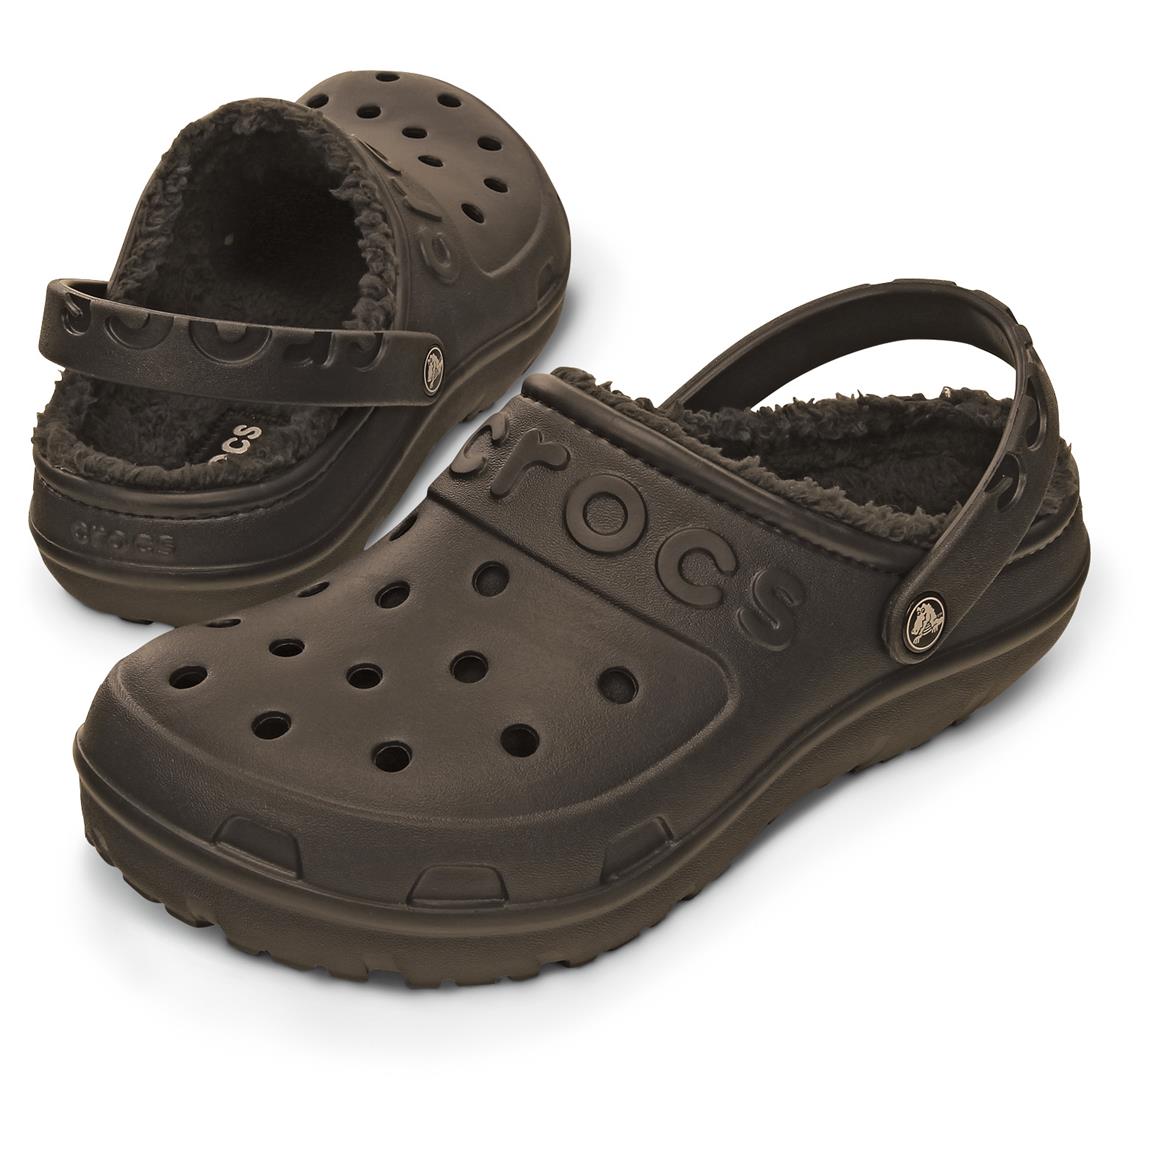 Crocs Men's Hilo Lined Clogs 643770, Casual Shoes at